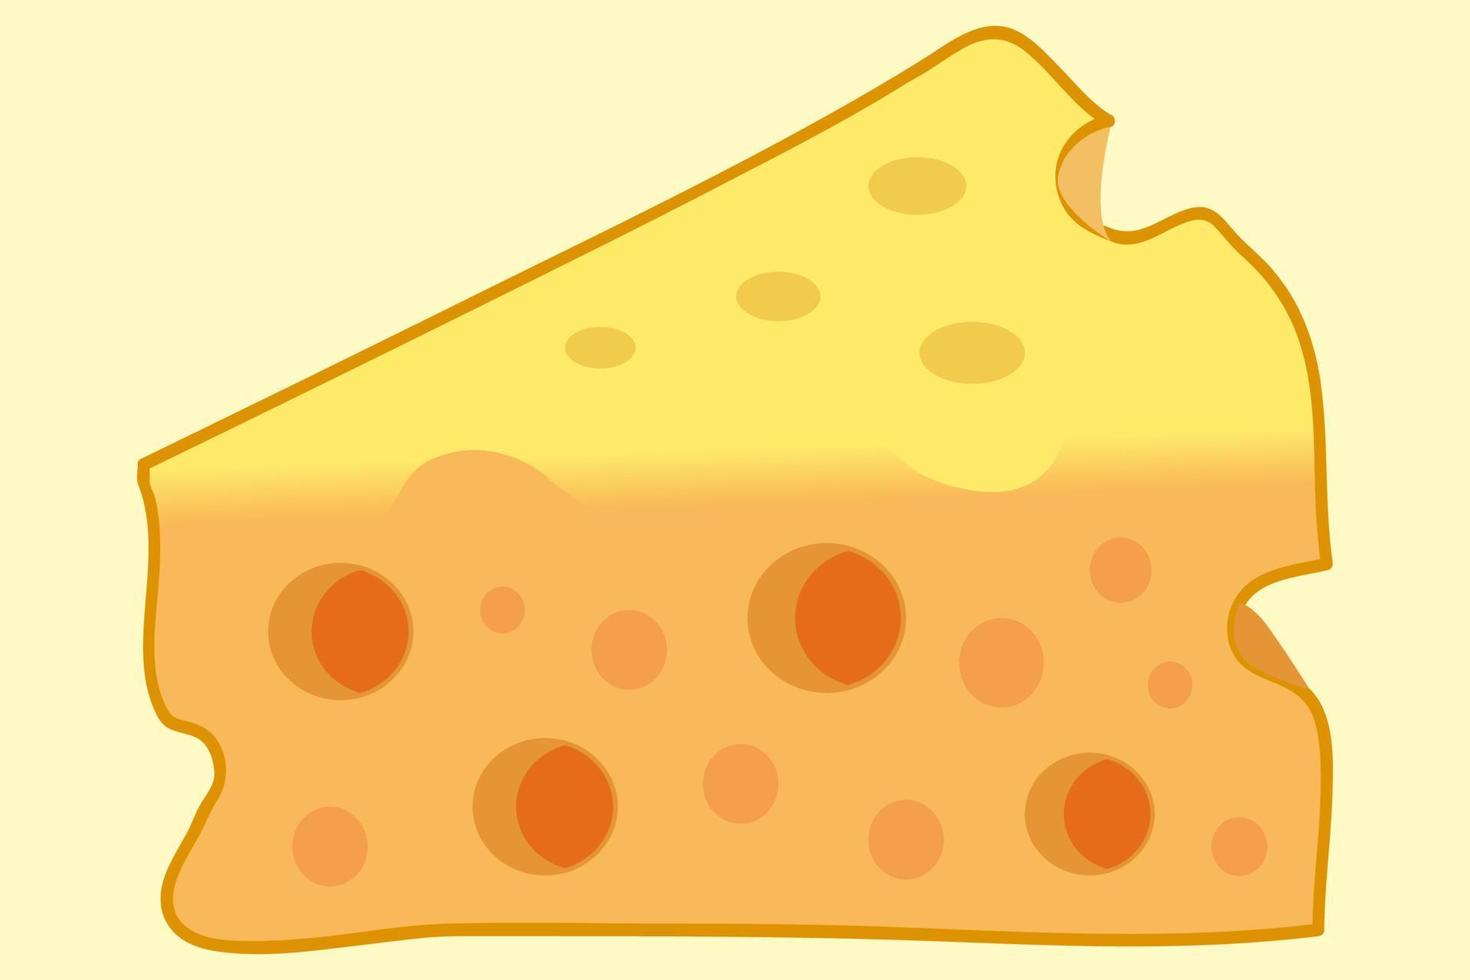 ilustração de queijo com grandes buracos, ilustração dos desenhos animados. vetor